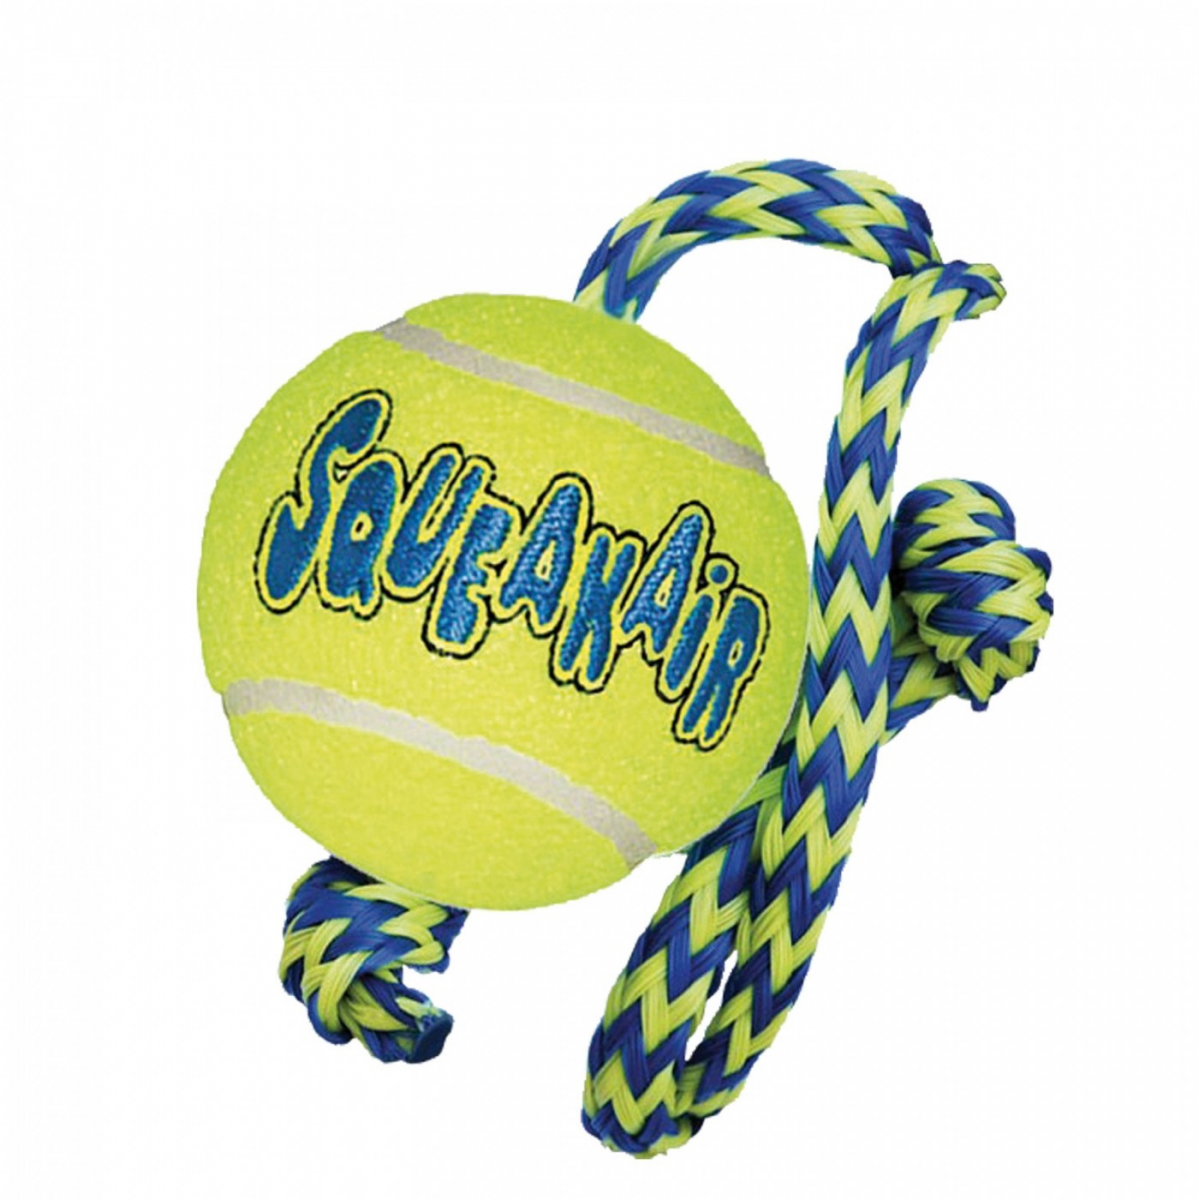 Jouet pour chien KONG Air Squeaker Tennis Ball avec corde